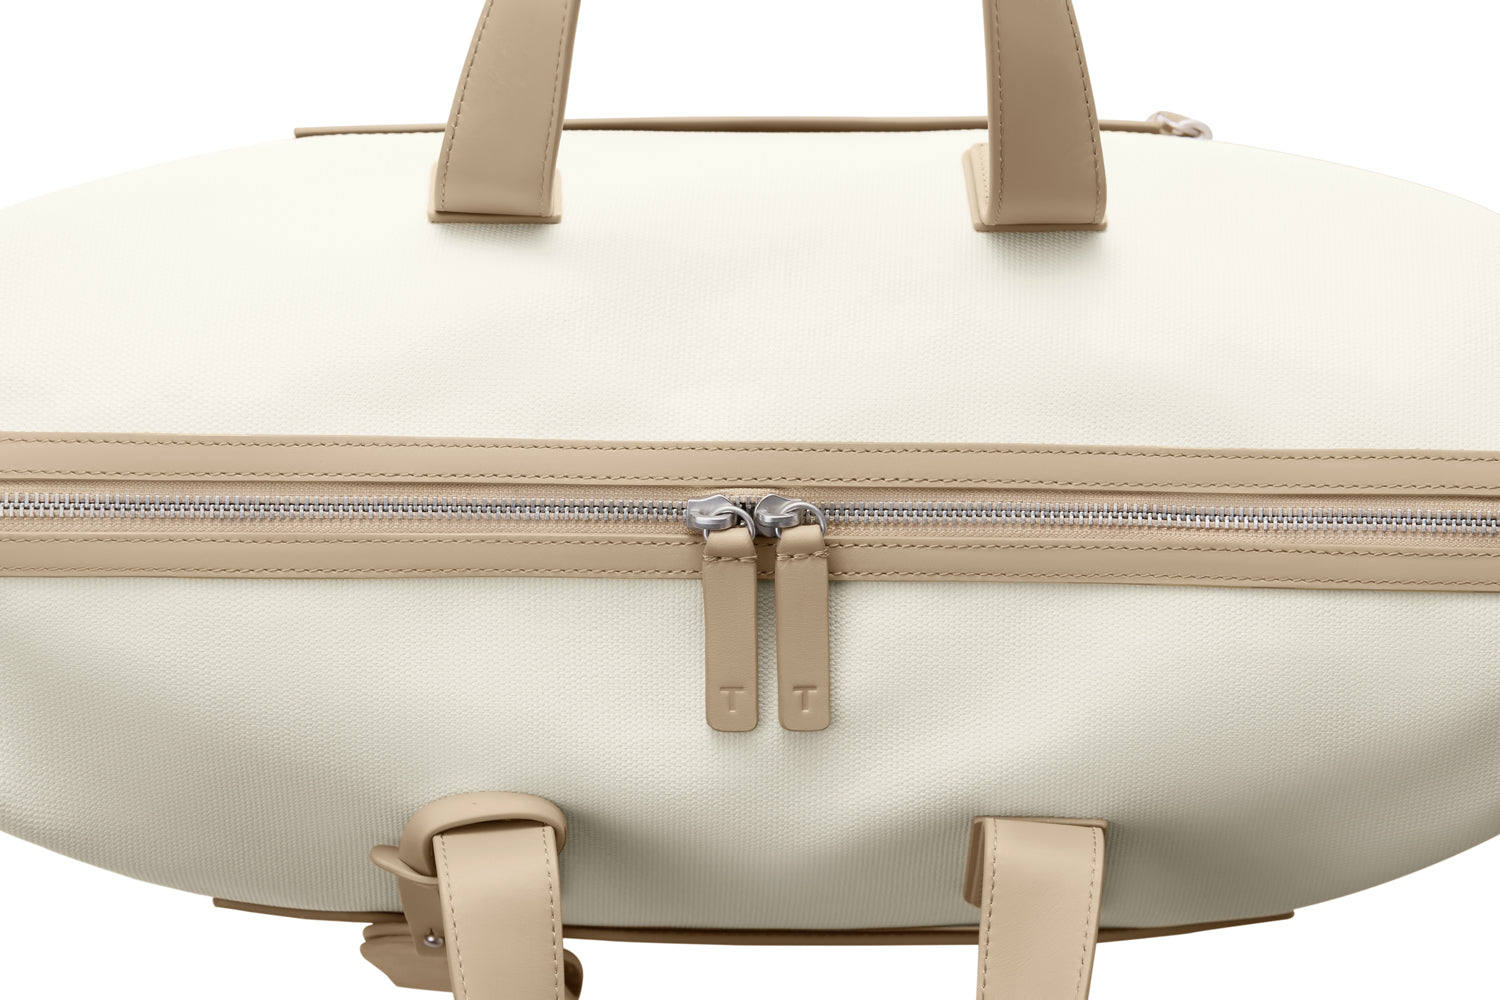 TUPLUS Travel Pro Expandable Bag